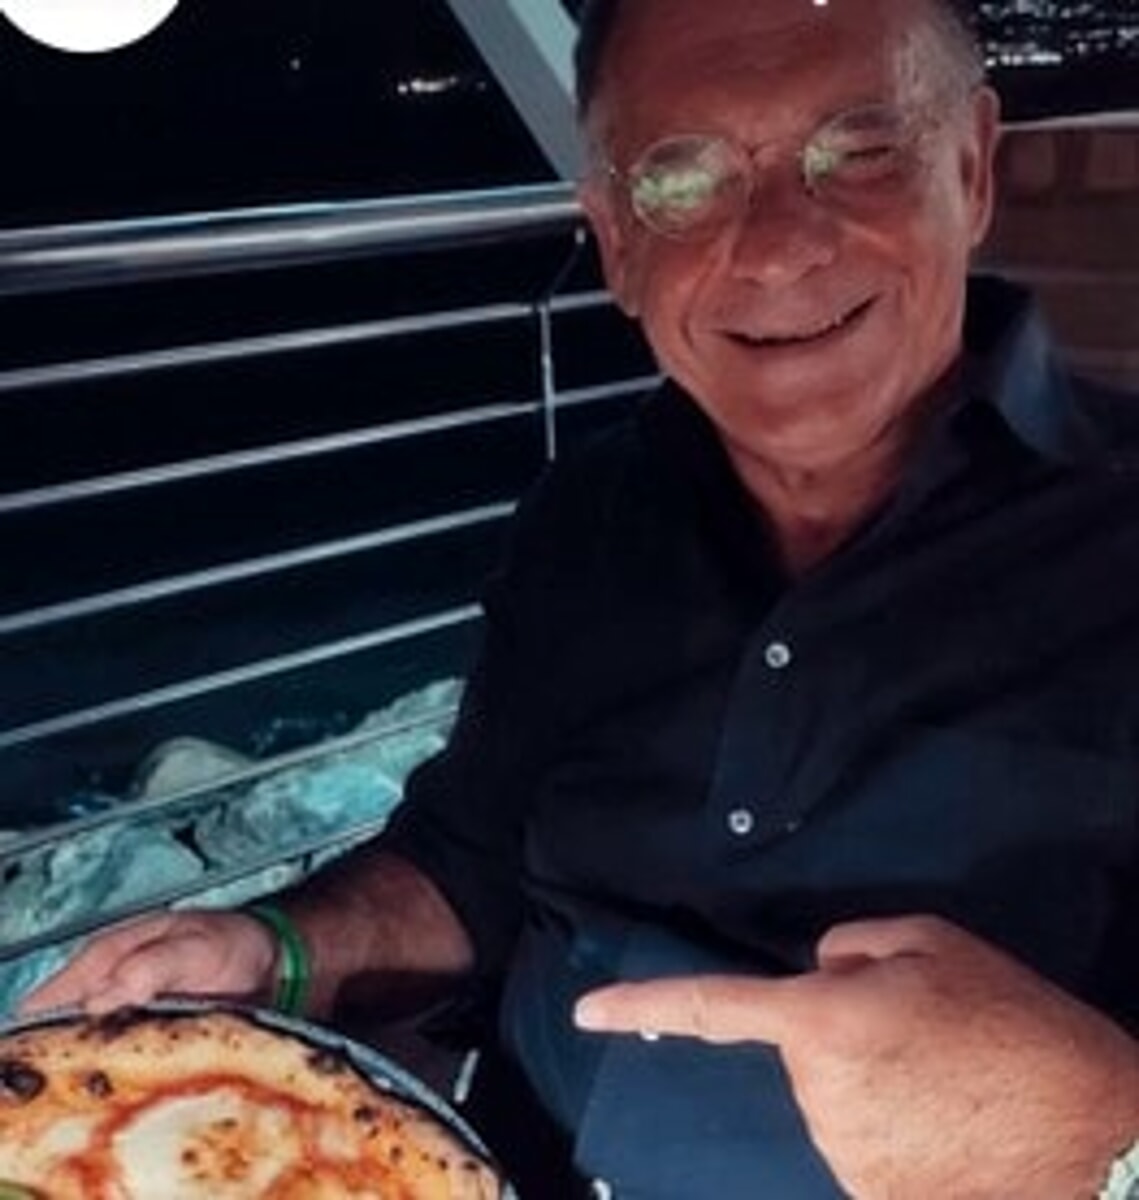 Salernitana-Roma: Cecchi Paone gusta la pizza al Pepe Nero di Salerno